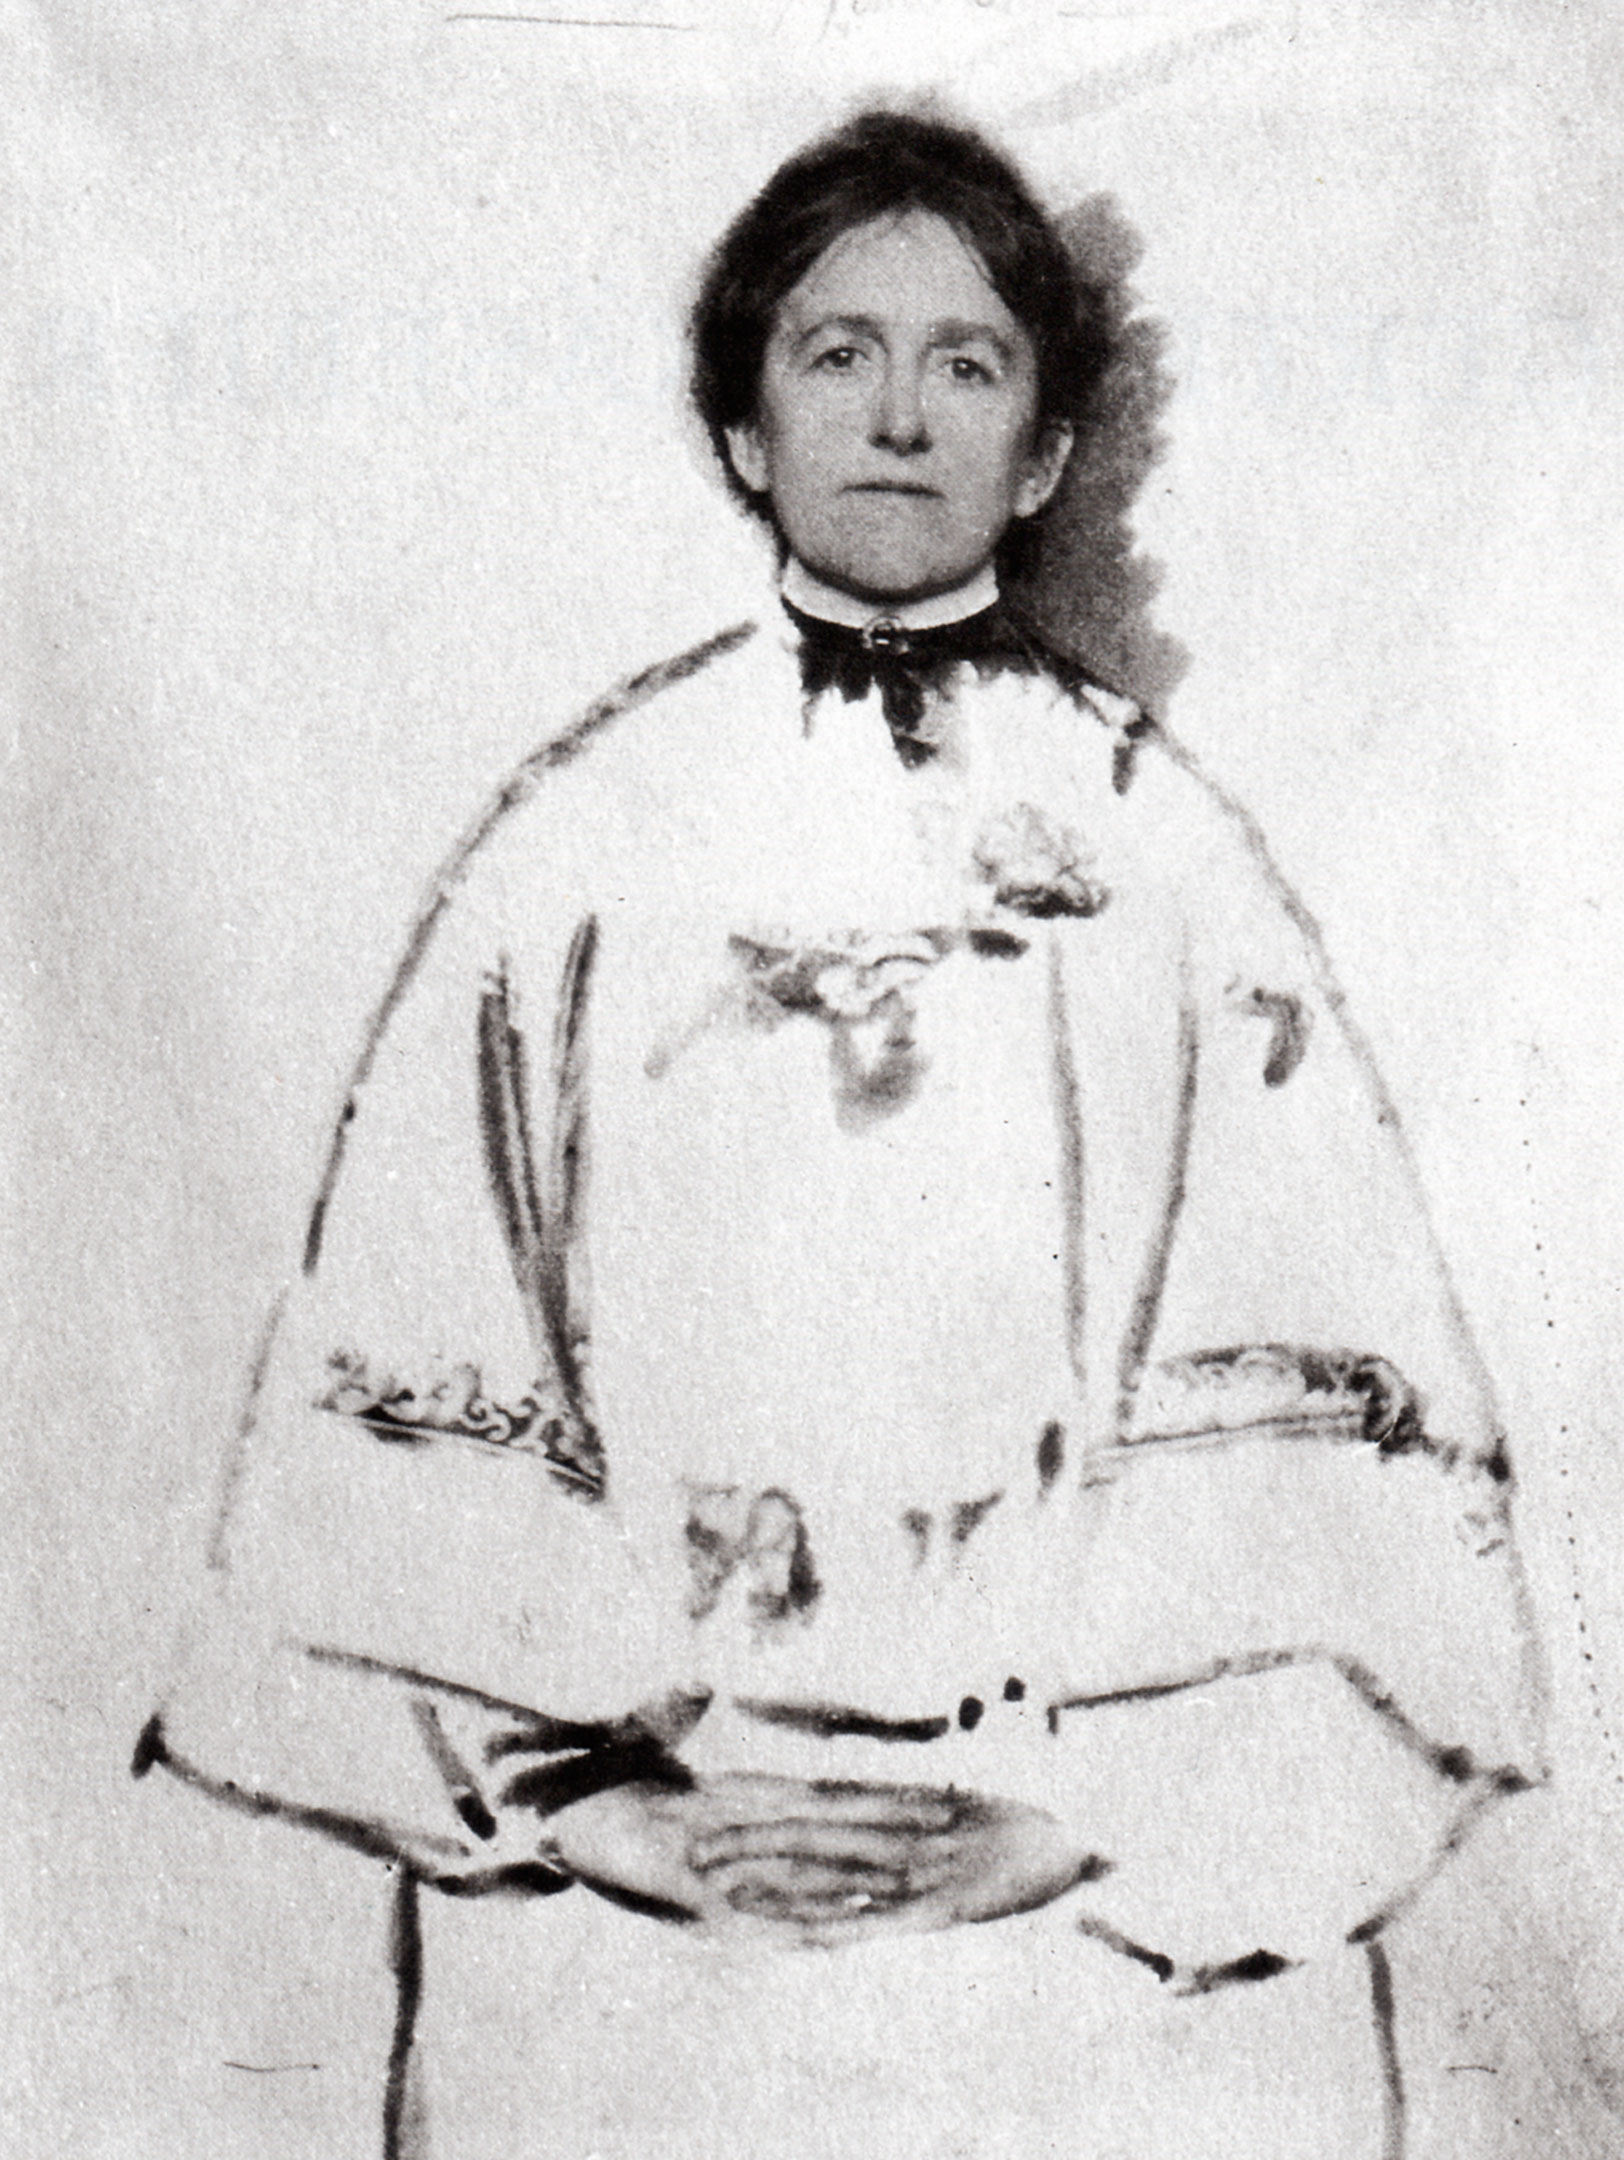 Gertrude Käsebier - May 18, 1852 - October 12, 1934